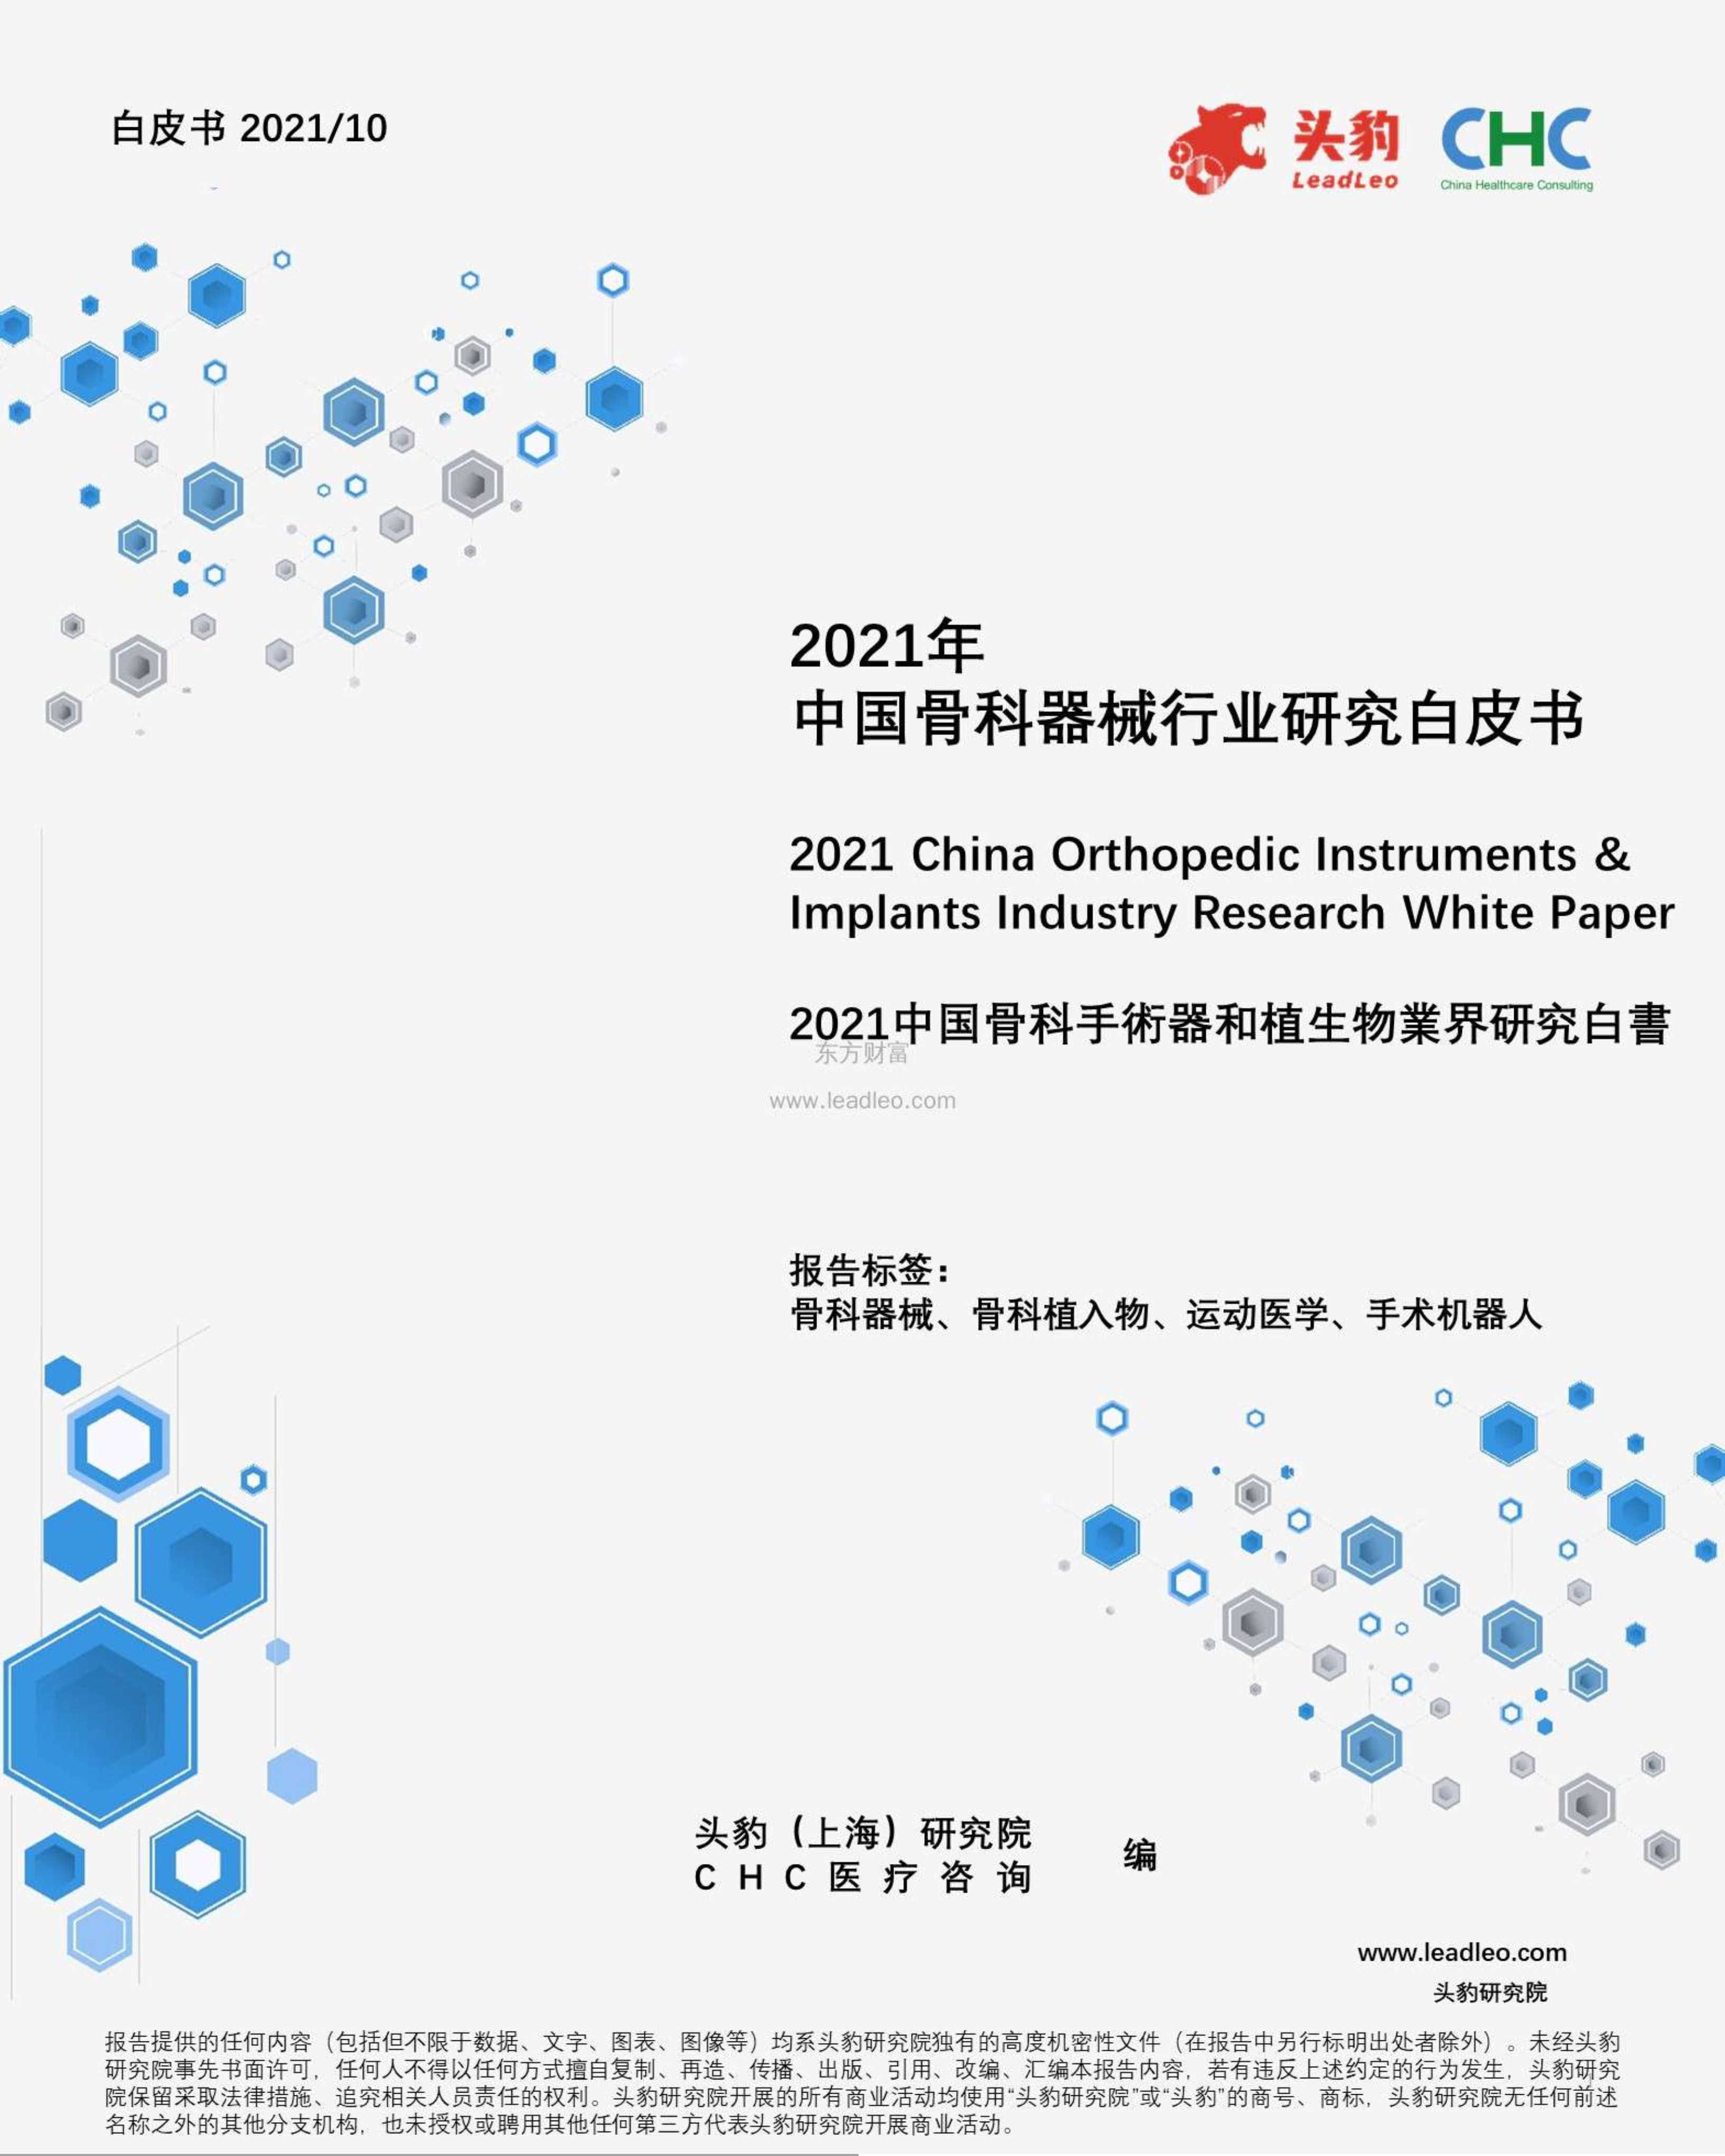 头豹研究院-2021年中国骨科器械行业研究白皮书-2021.10-44页